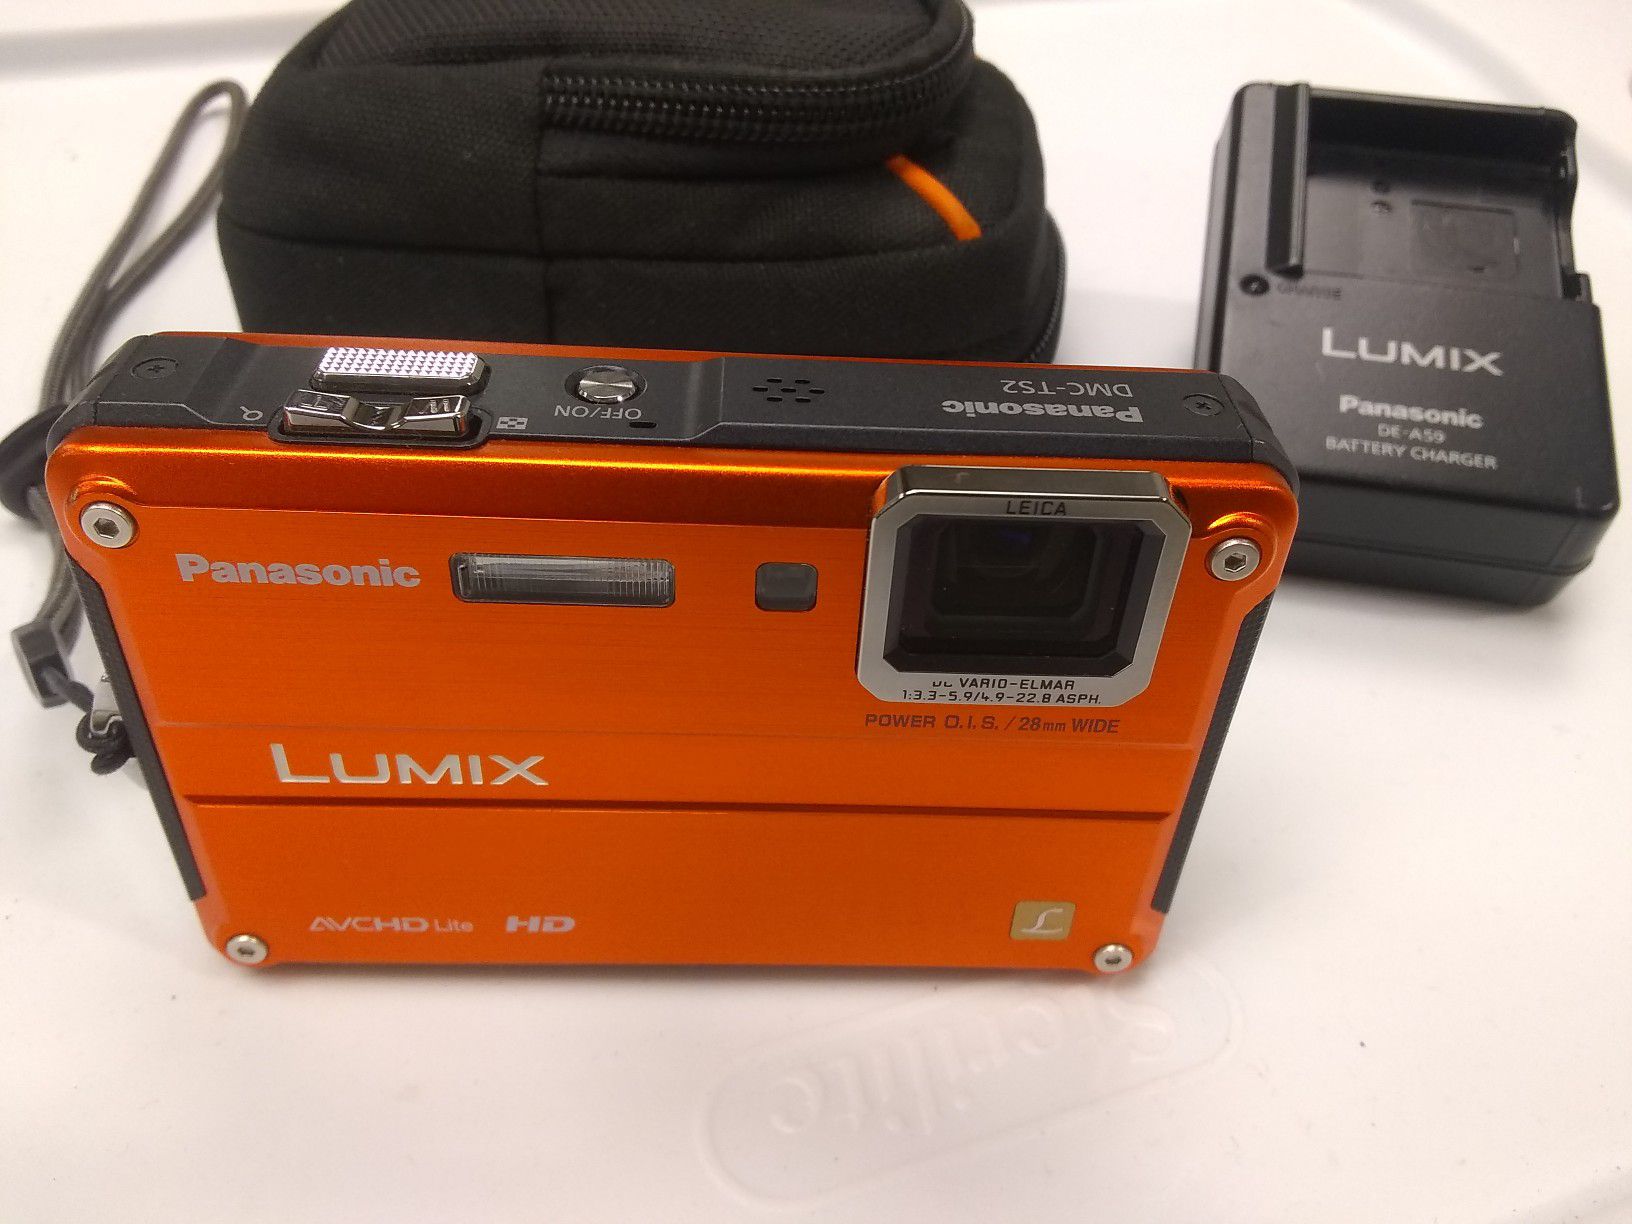 Panasonic Lumix DMC-TS2 14 mega pixel Digital Camera Waterproof to 33'